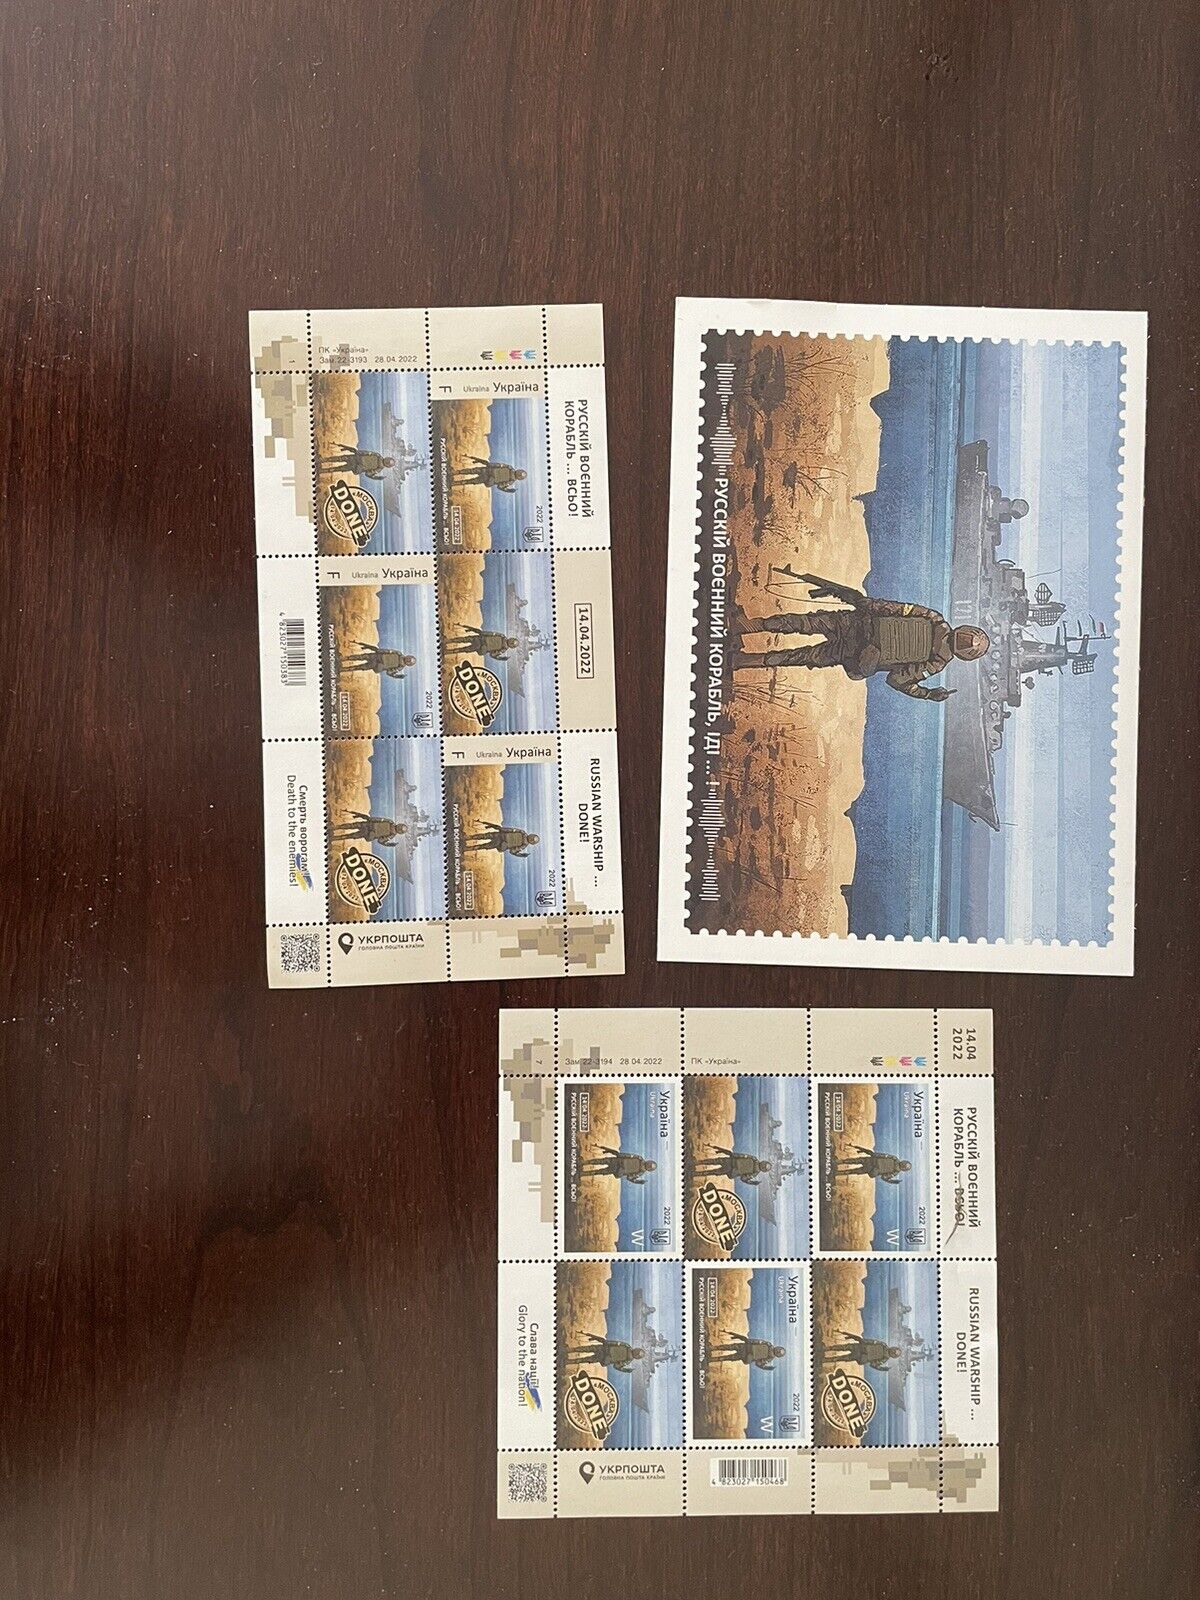 Ukrainian collectible postcard collection